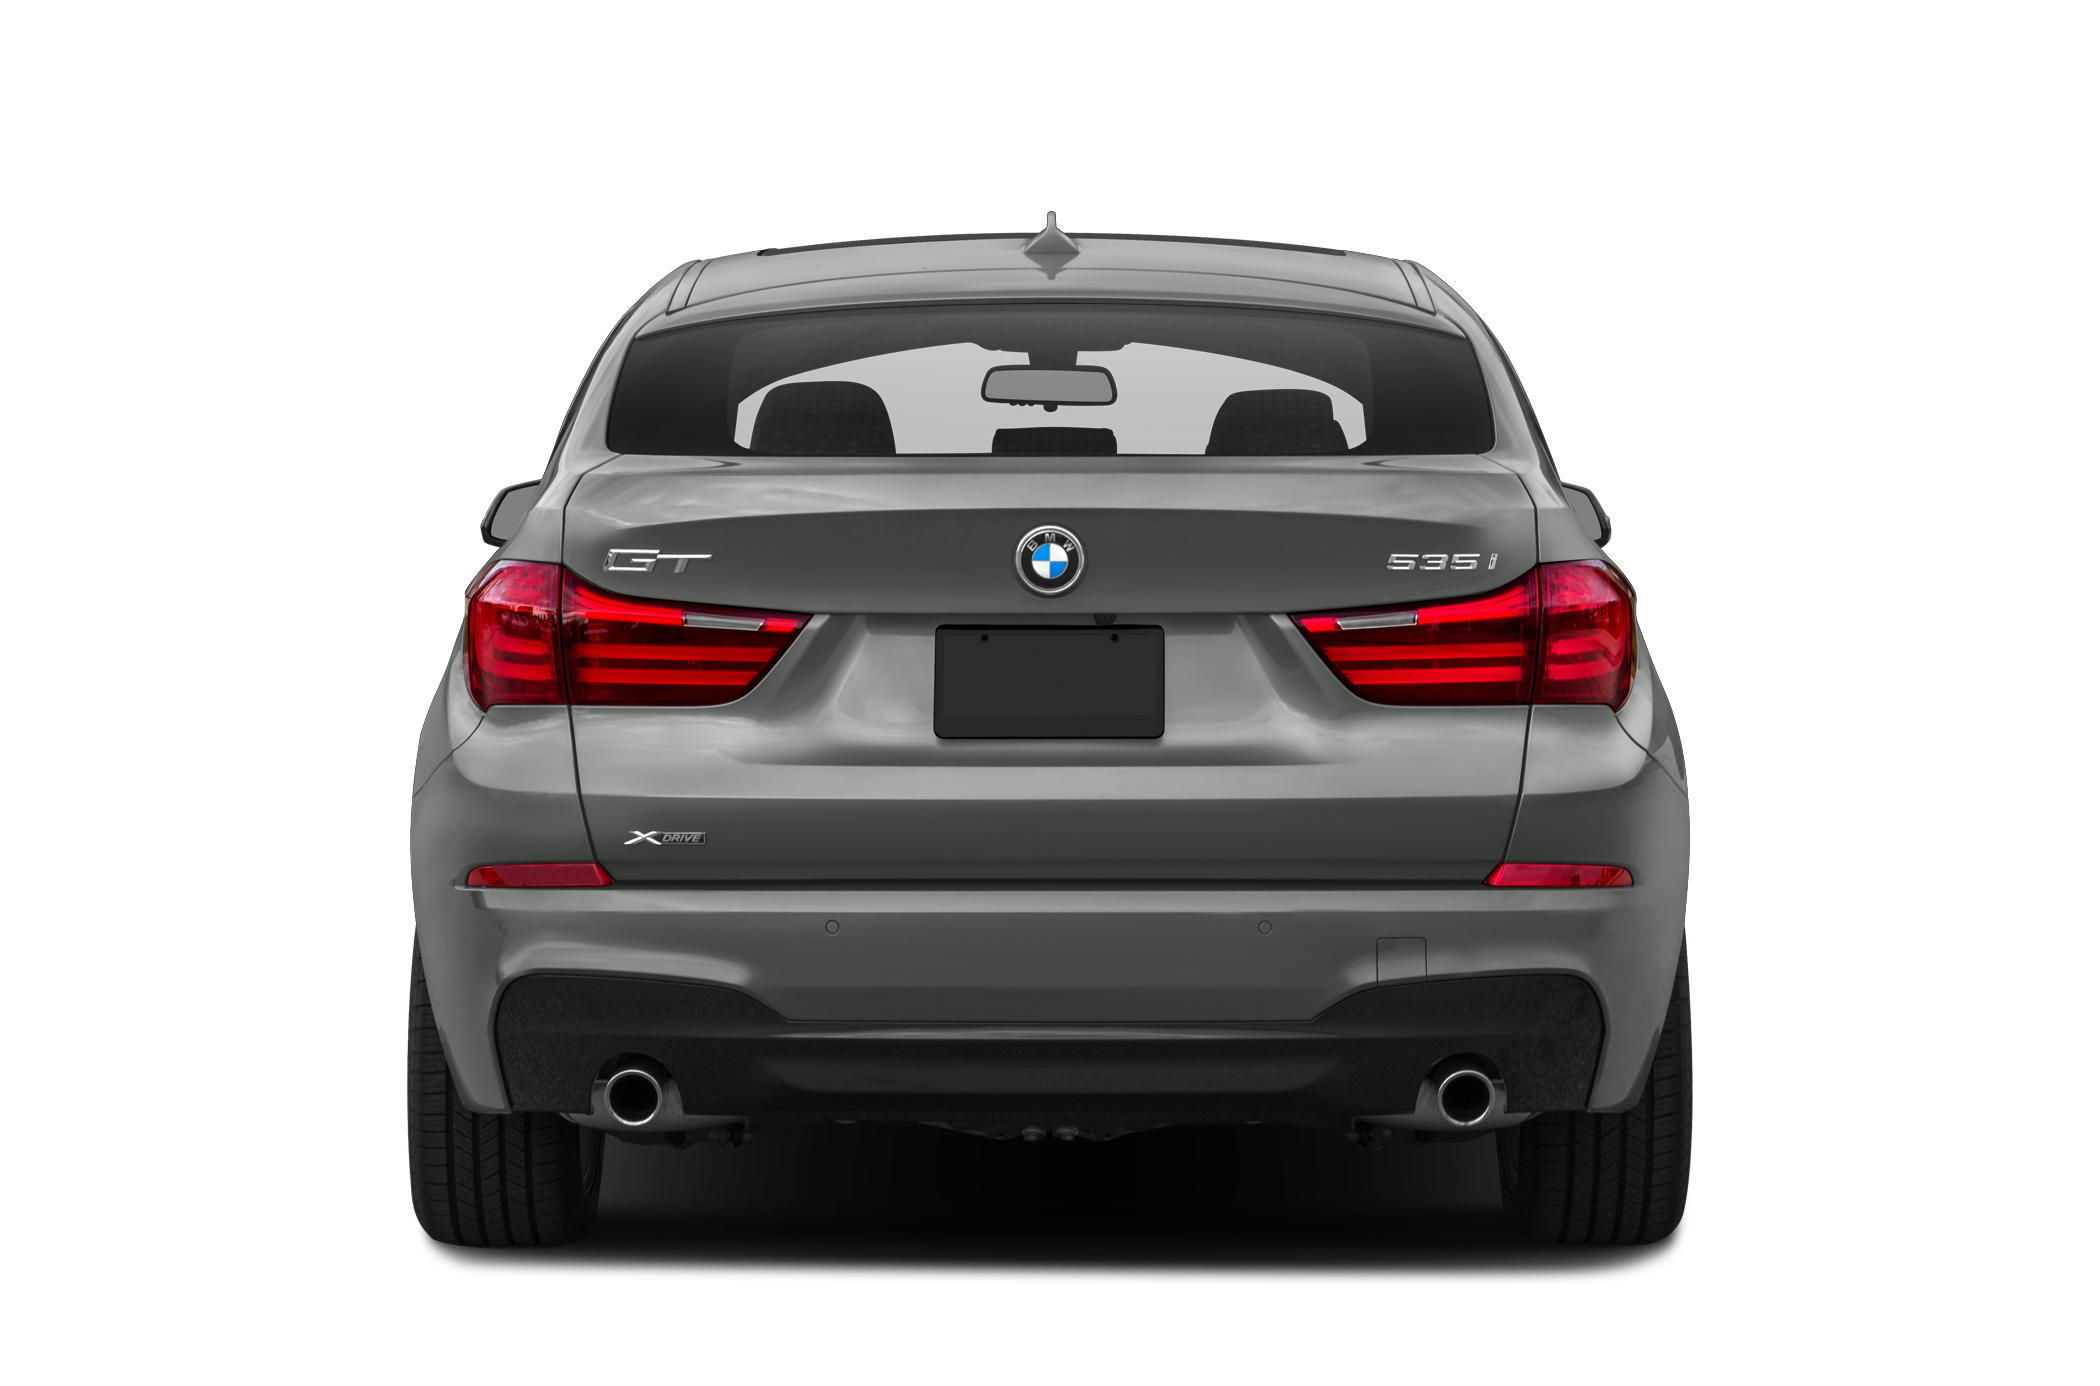 2016 BMW 535 Gran Turismo